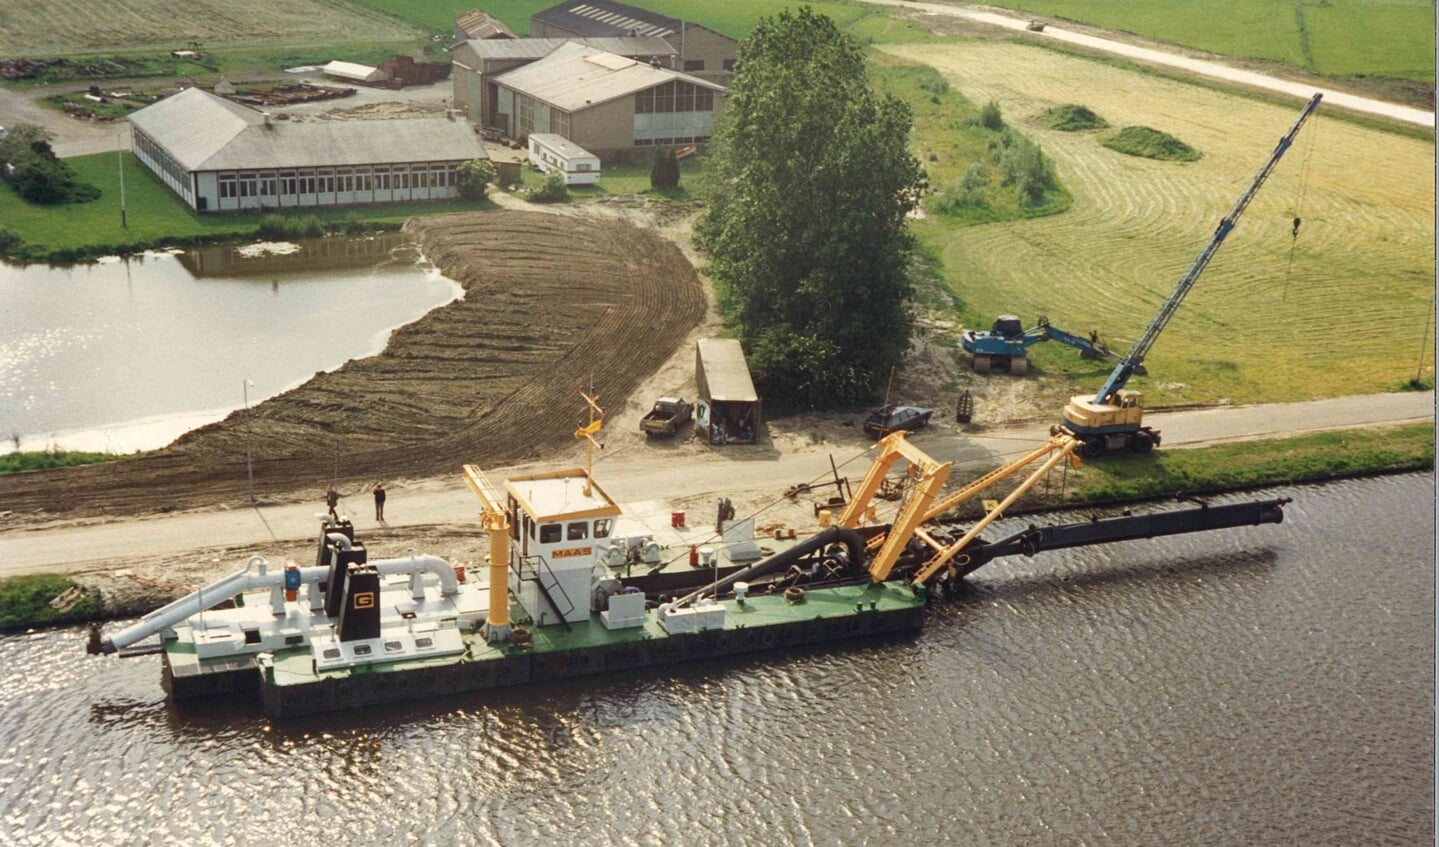 In 1986 lag er een zandzuiger ter afbouw in de Arkervaart. Het bedrijf ligt nog in ed weilanden.